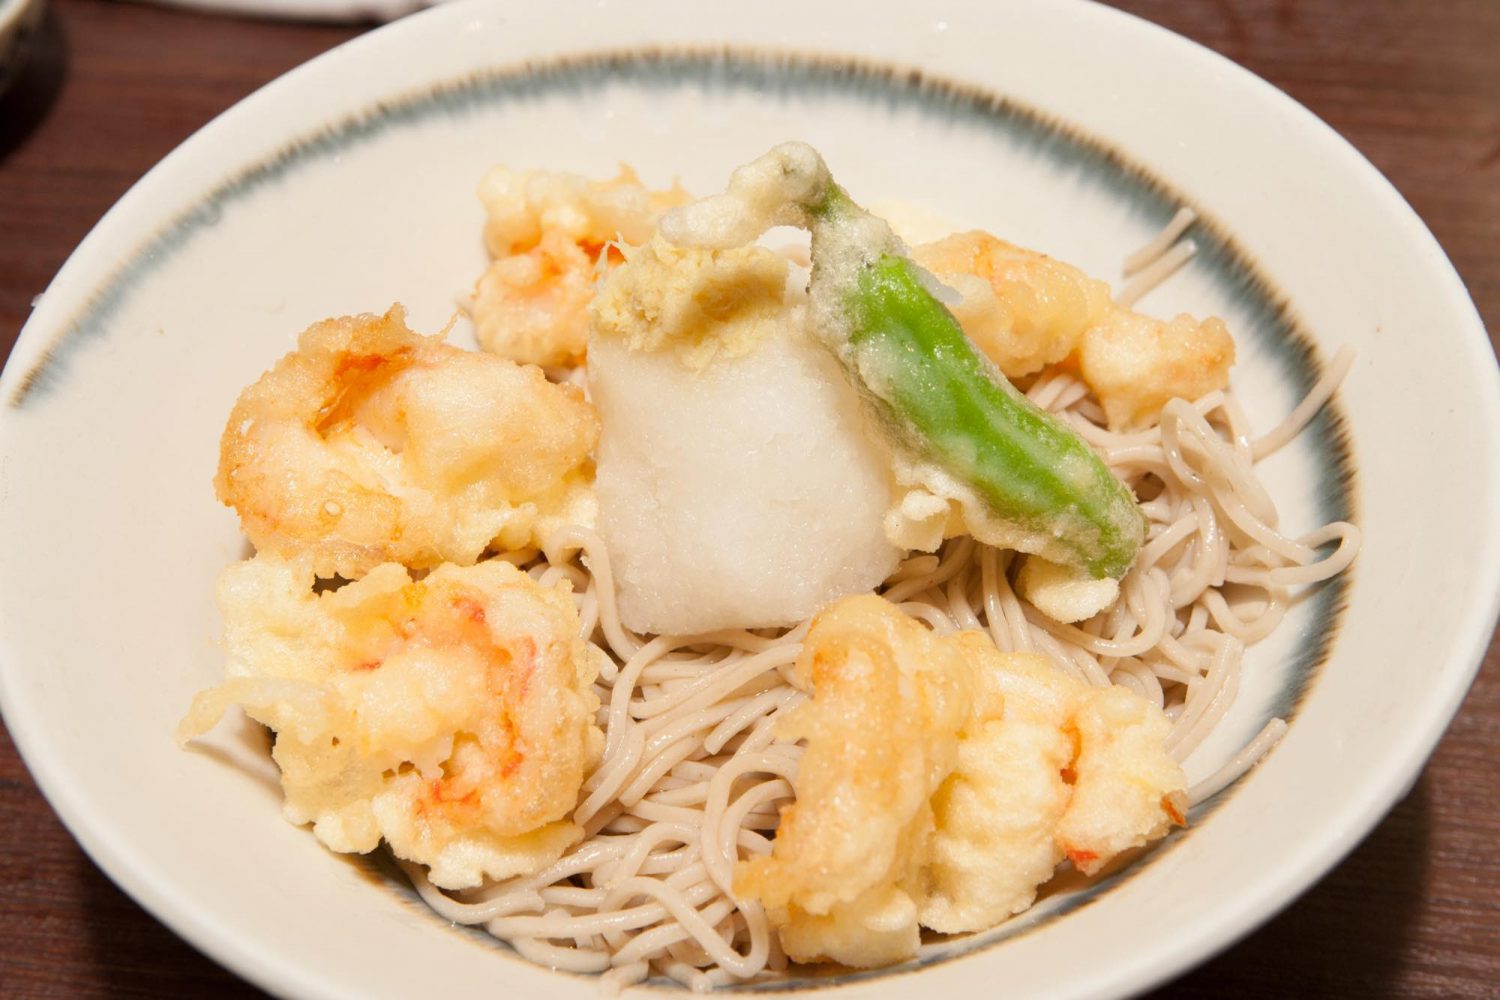 HIYASHI-TENOROSHI-SOBA（冷し天おろしそば ）: Cold noodles with five fried Tempura prawns dipping sauce & grated radish